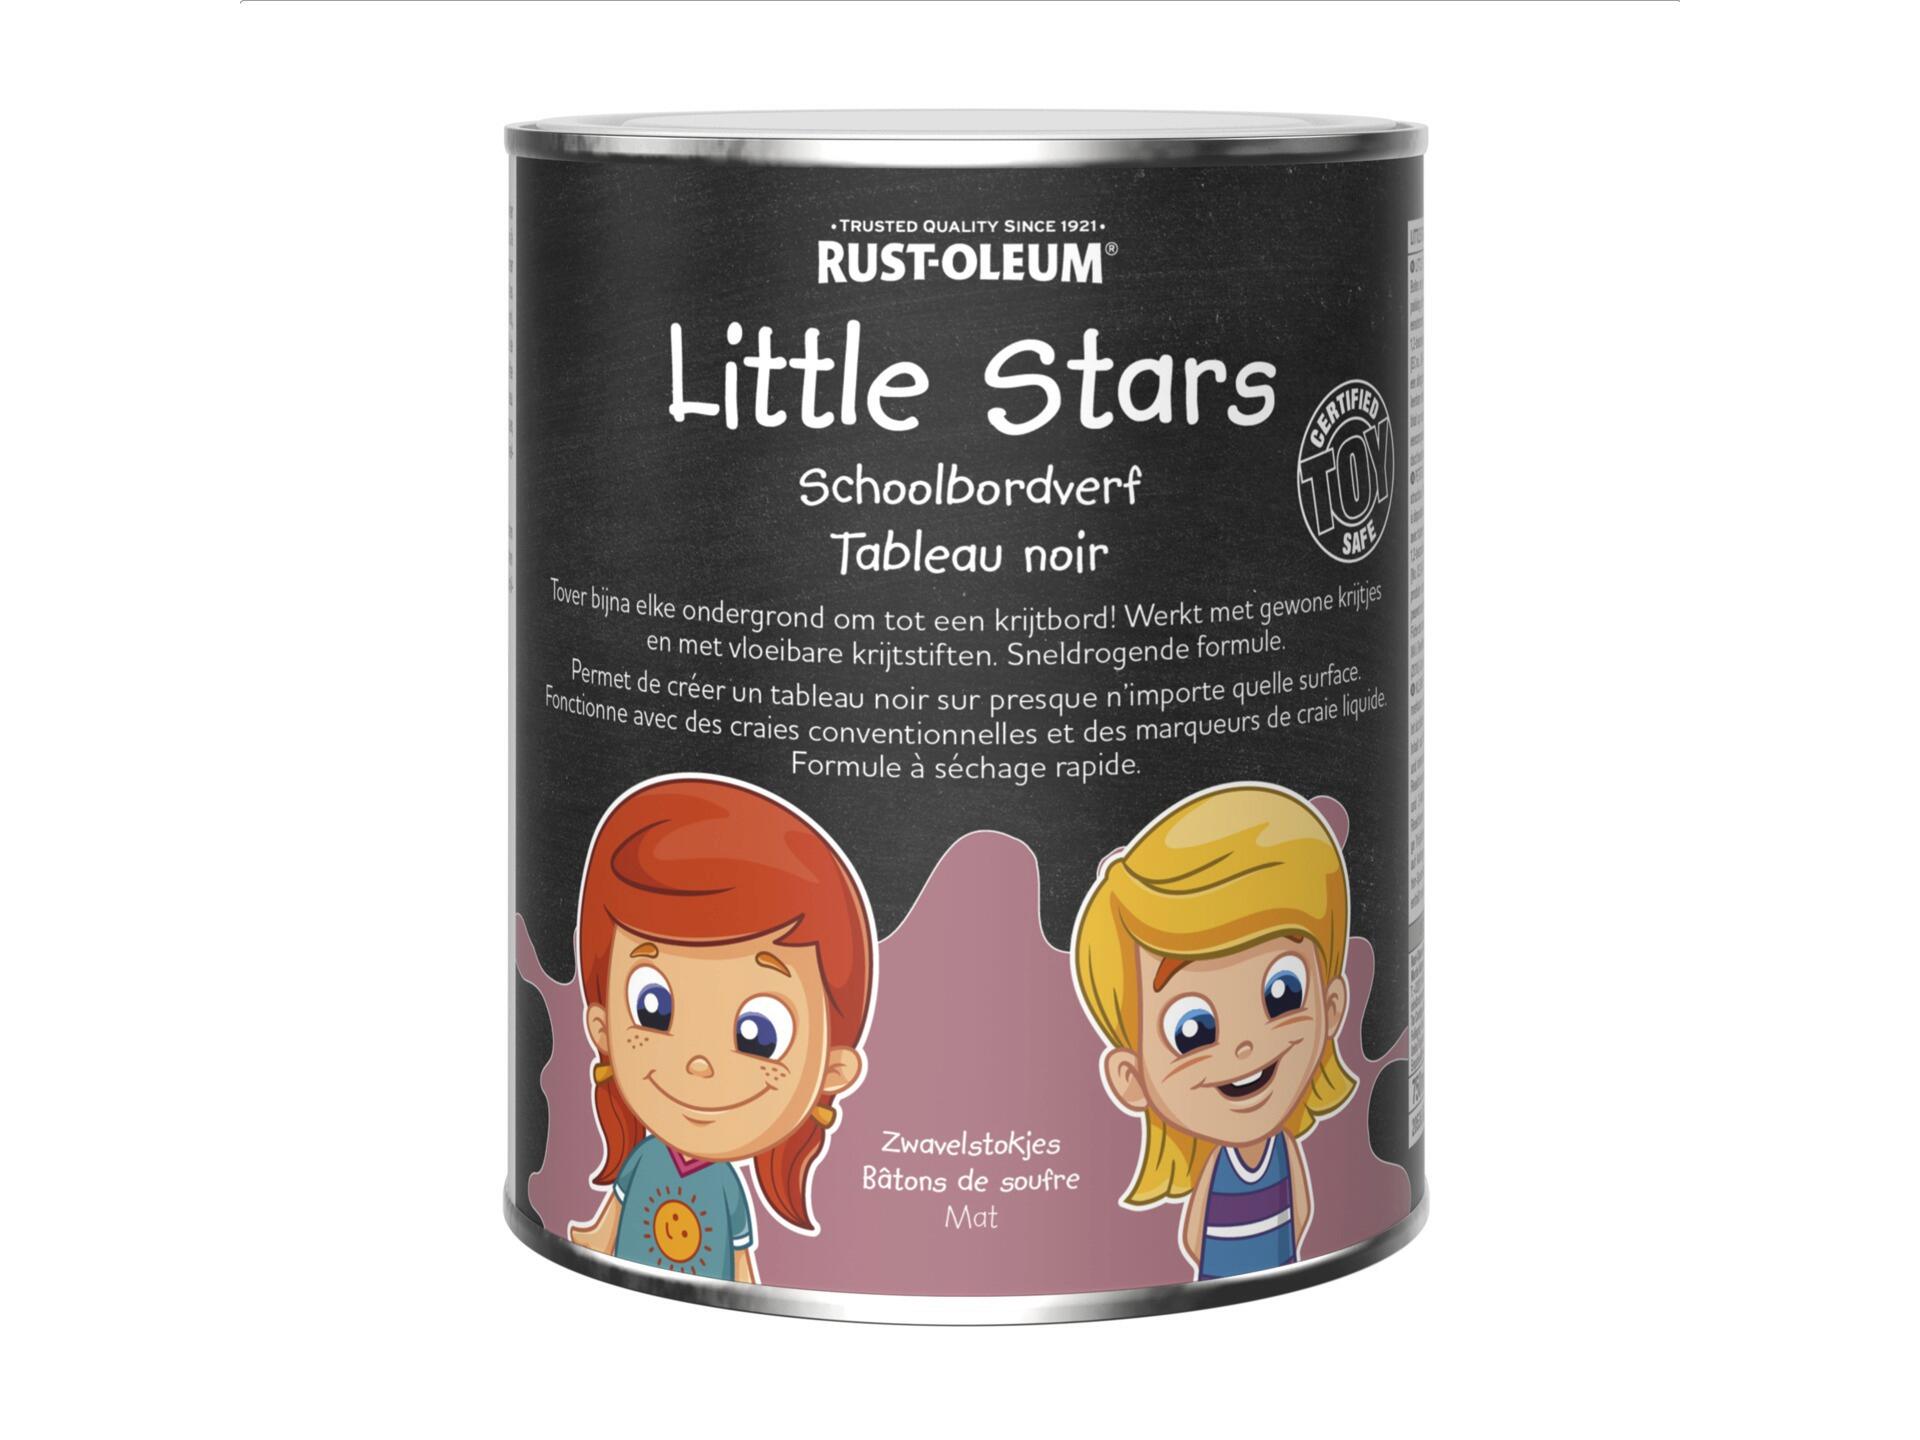 Rust-oleum Little Stars peinture pour tableau noir 750ml bâtons de soufre